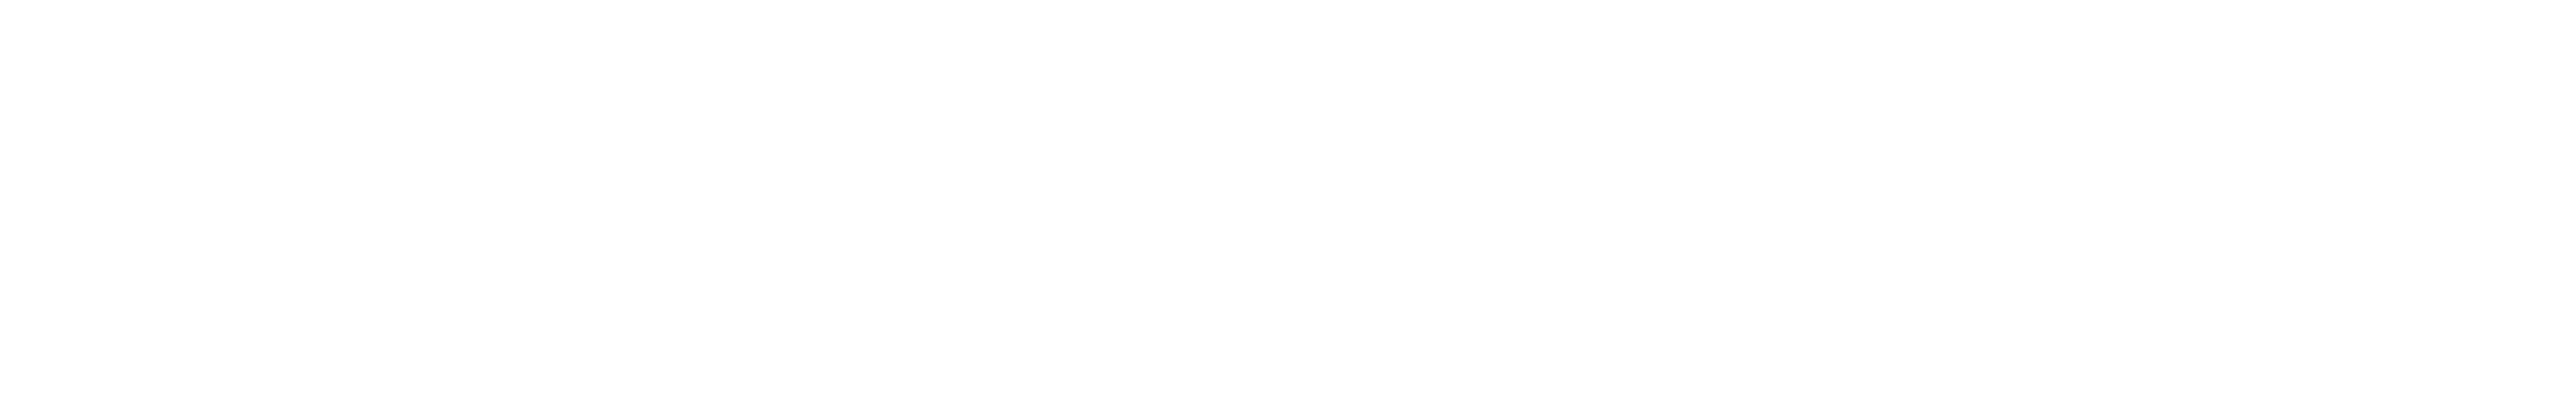 HealthRosetta_LogoWhite (1)